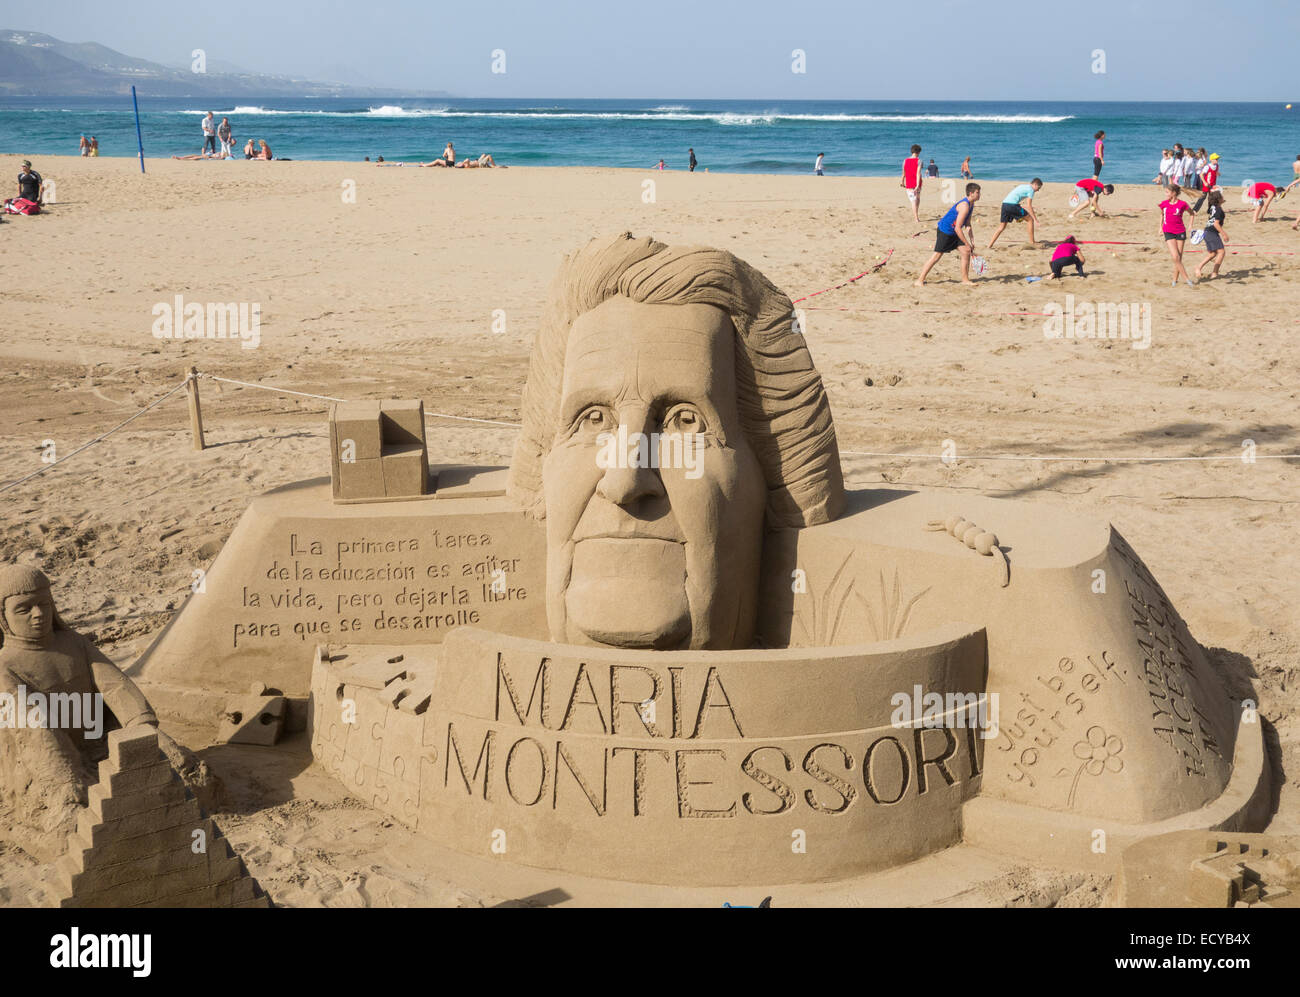 Sabbia sculputure di Maria Montessori, italiano medico ed educatore sulla spiaggia in Spagna Foto Stock